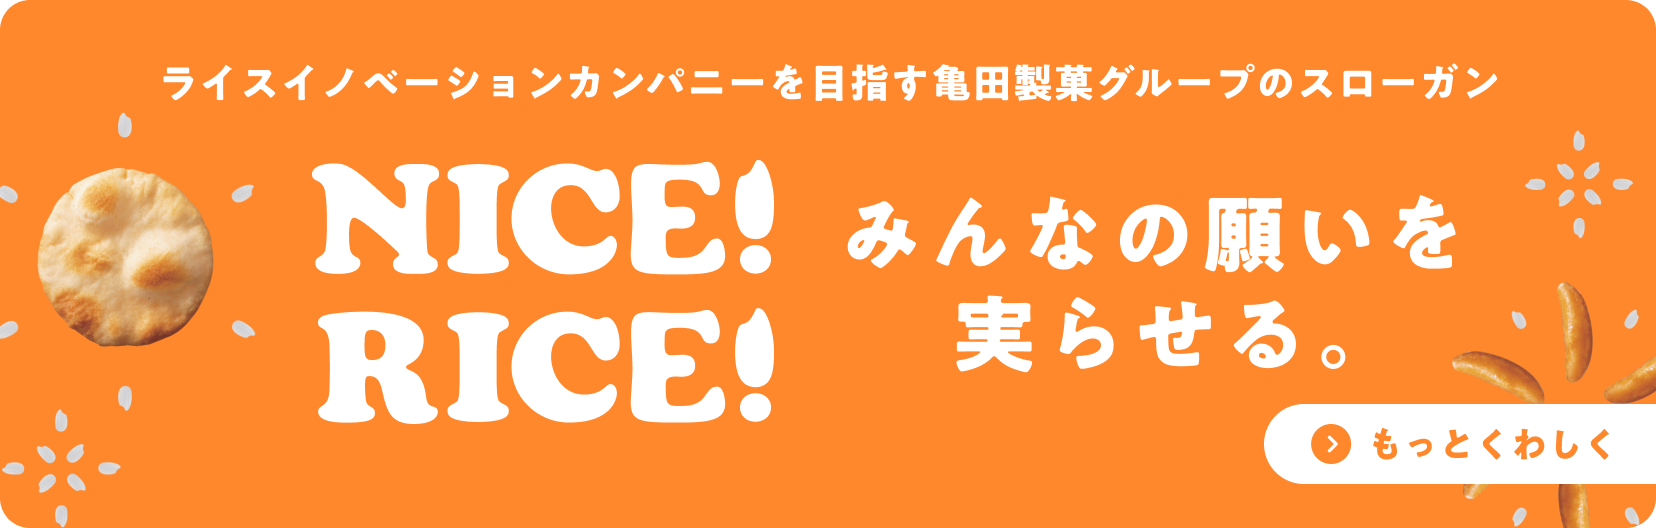 ライスイノベーションカンパニーを目指す亀田製菓グループのスローガン nice!rice!みんなの願いを実らせる。もっとくわしく